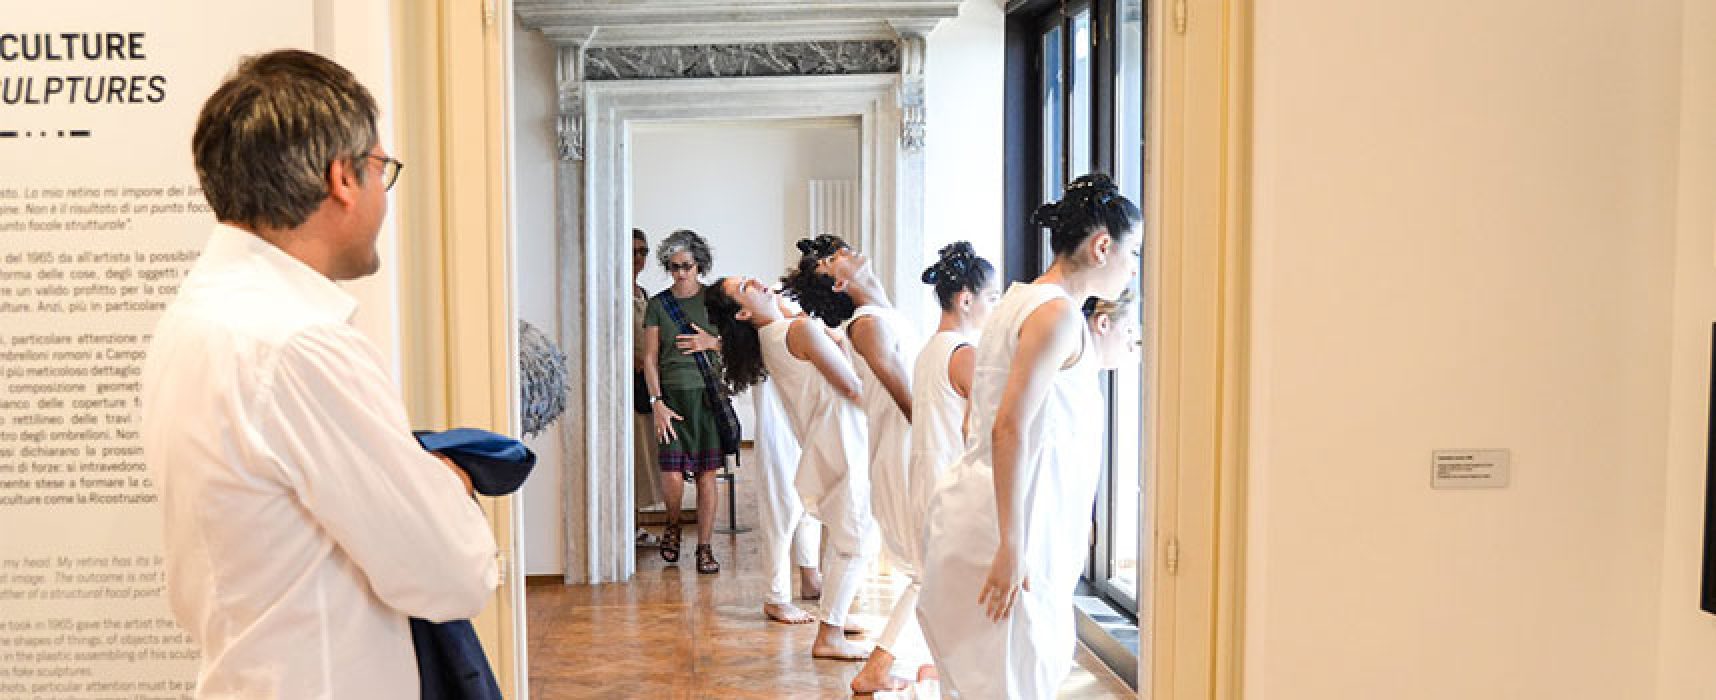 Successo per la Compagnia Menhir a Venezia, Angarano: “Una straordinaria emozione” / FOTO